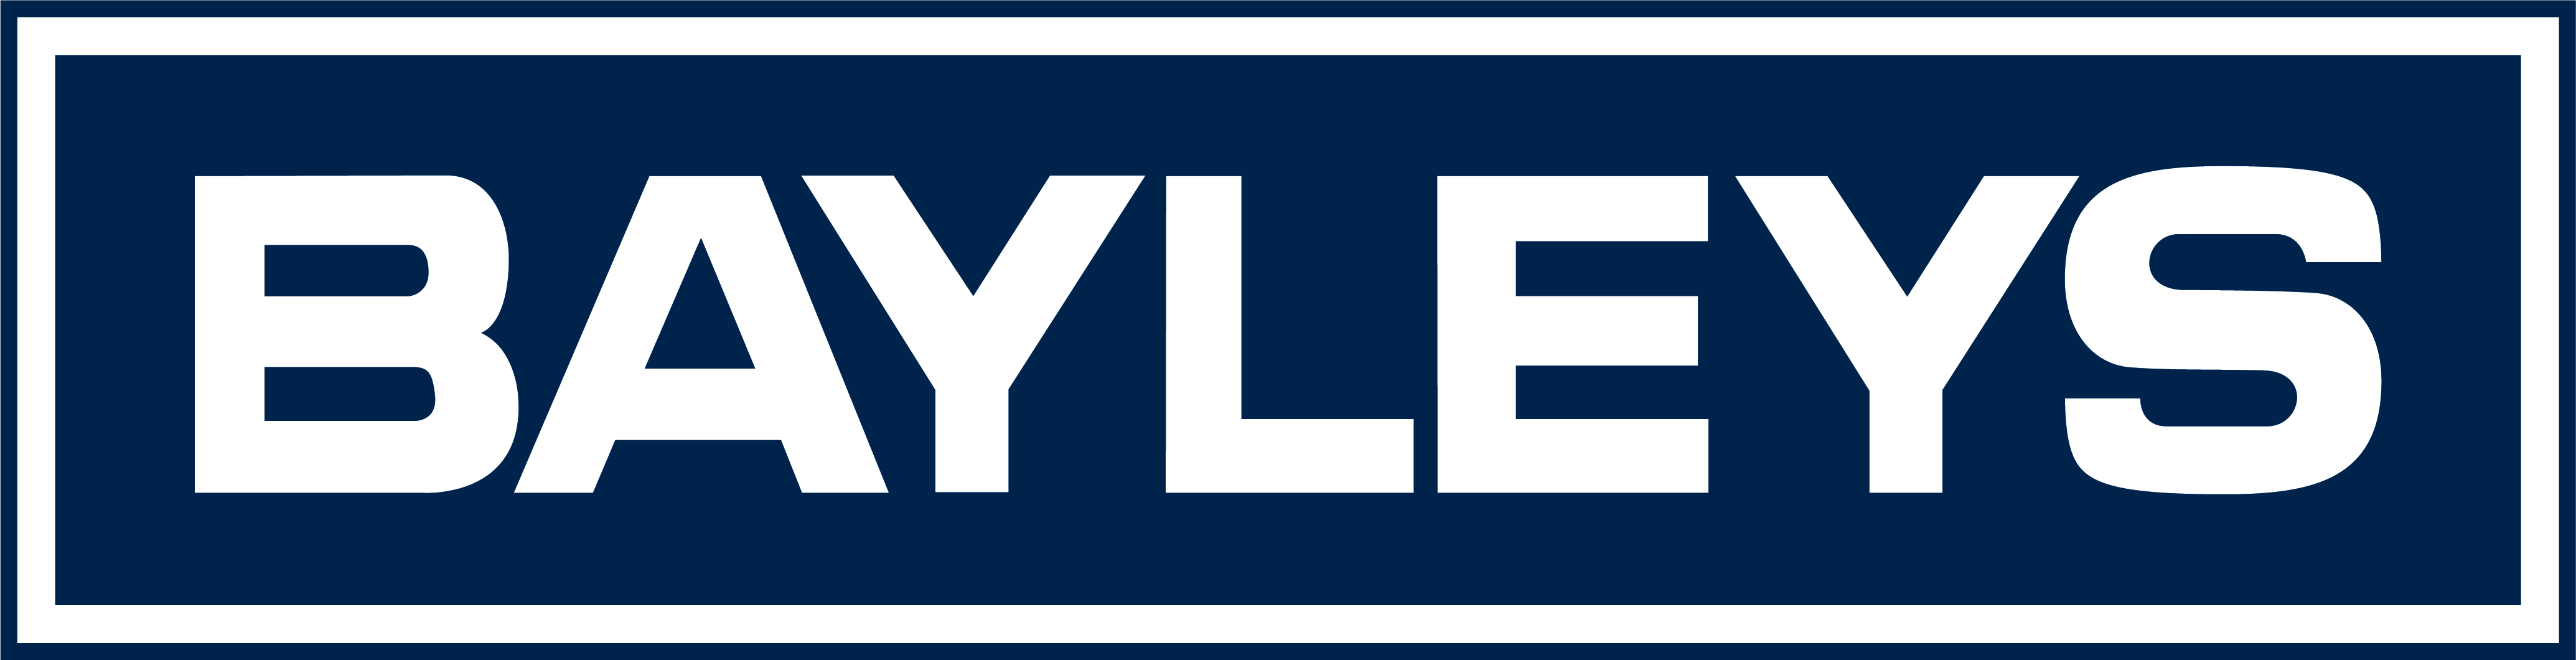 Bayleys-01